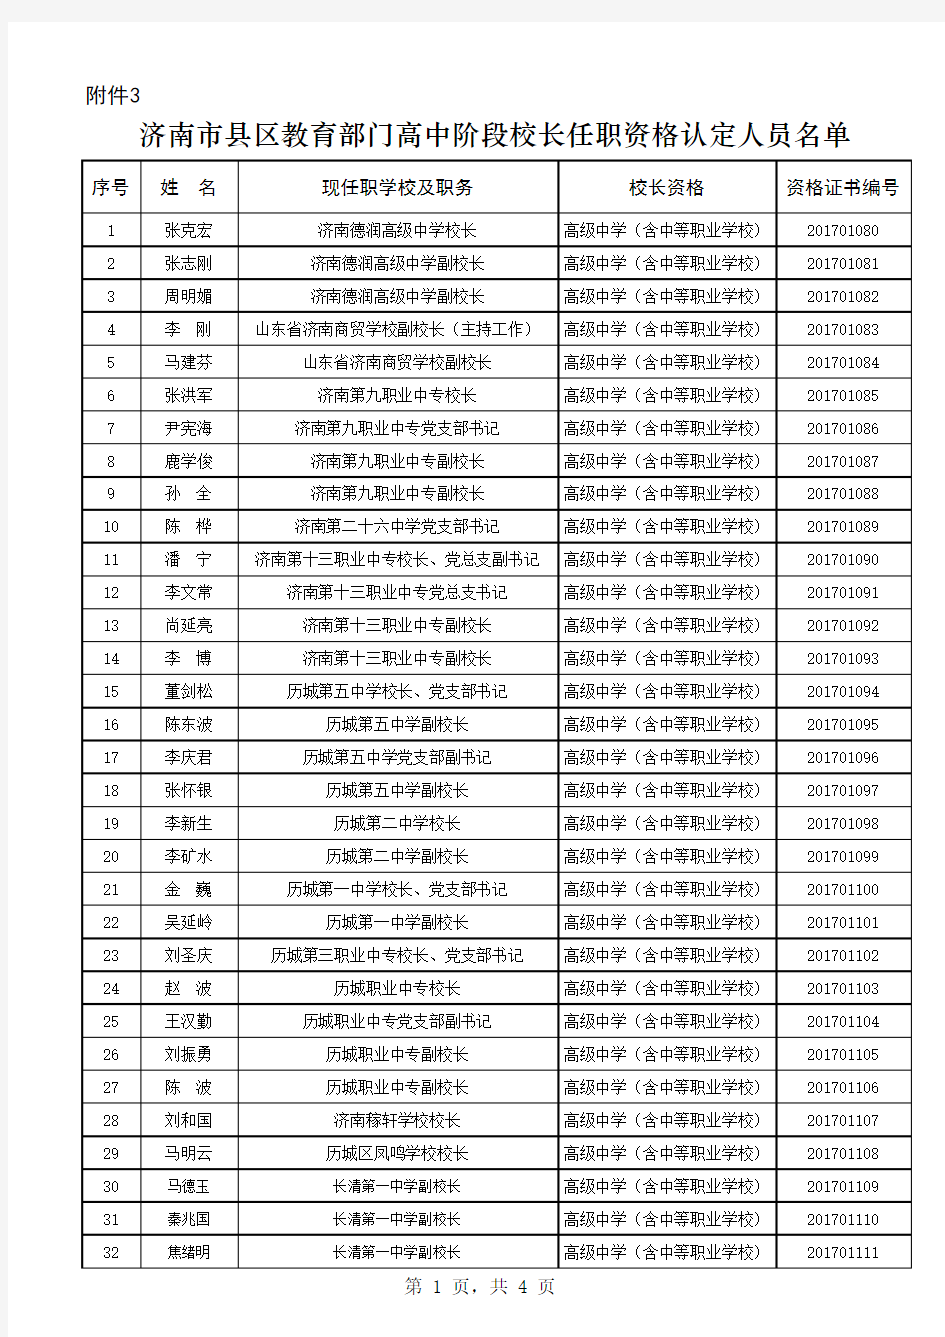 2017年济南市县区教育部门高中阶段校长任职资格认定人员名单